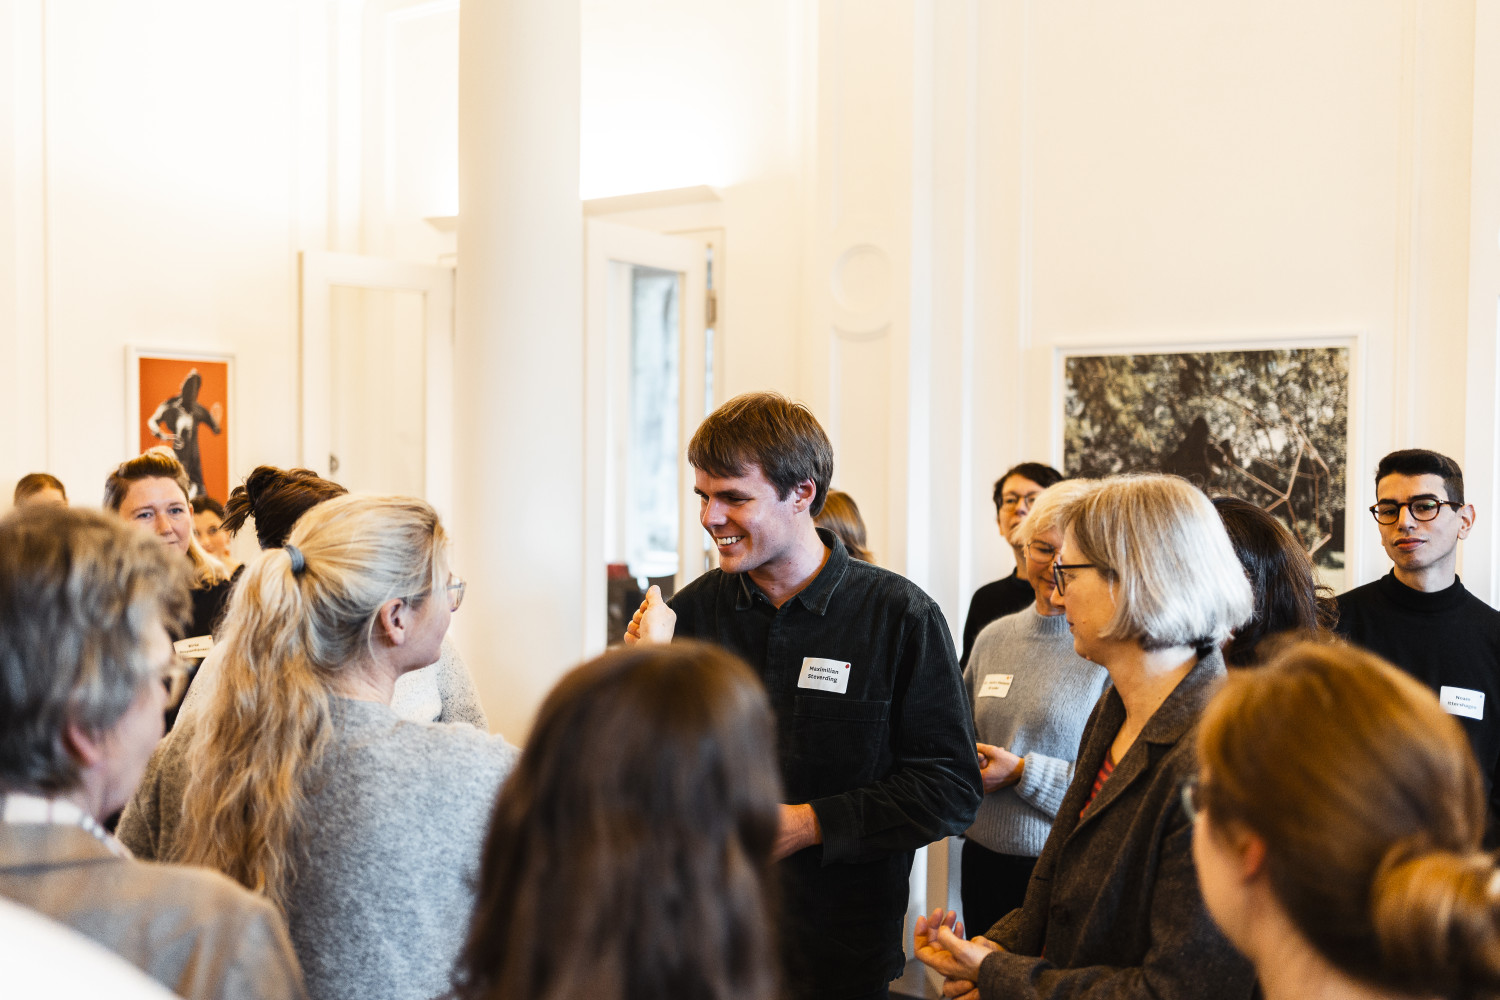 Fotos von der Veranstaltung Ganztag und Raum Meet the Team der Montag Stiftung Jugend und Gesellschaft